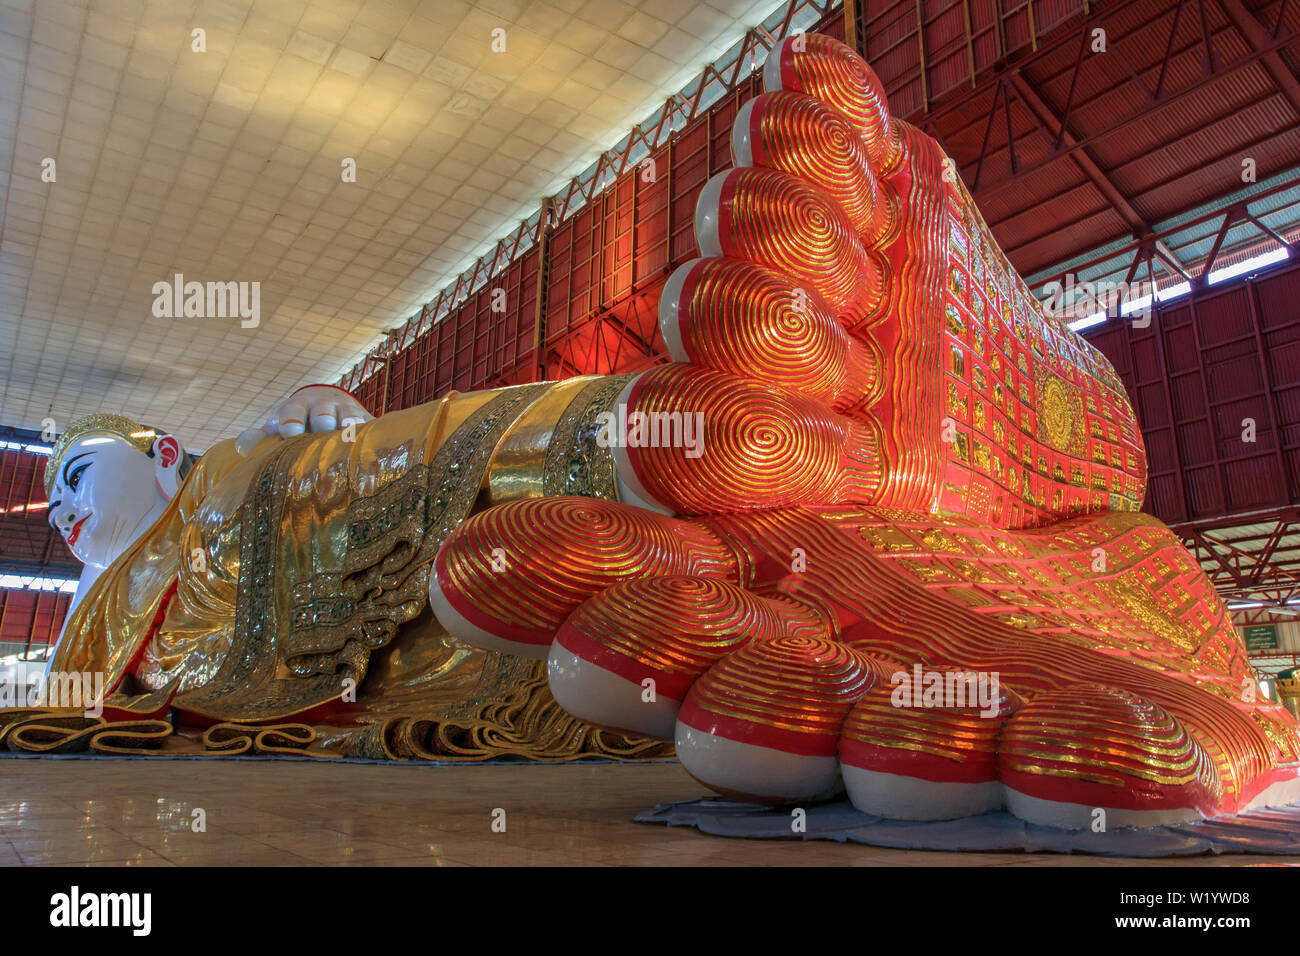 El gigante Buda reclinado de Rangún Foto de stock